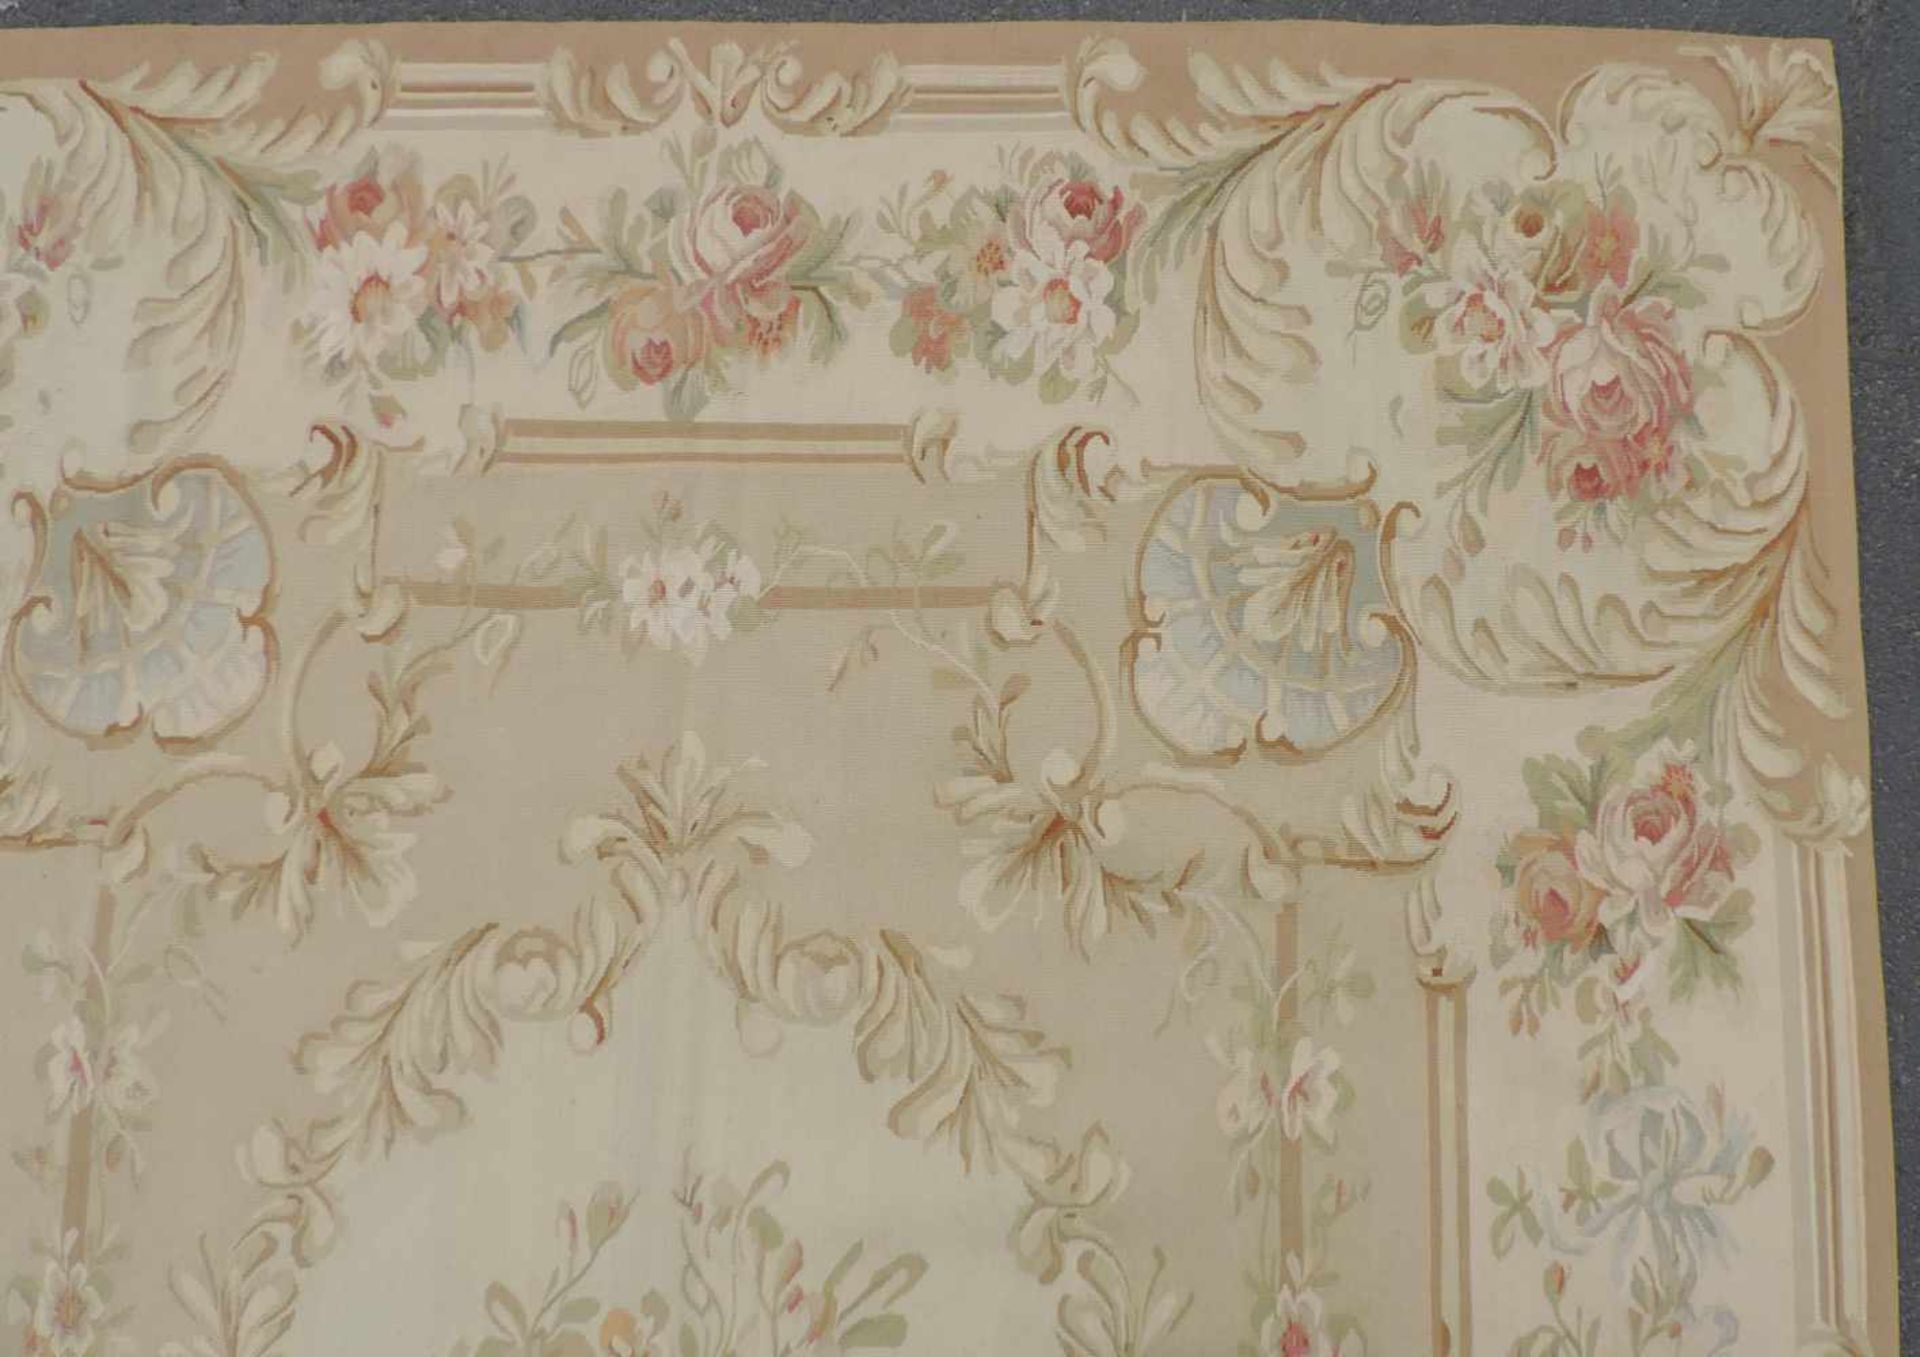 Tapis de Pied "Aubusson". Salonteppich.275 cm x 188 cm. Handgewebt. Wolle auf Wolle.Tapis de Pied " - Image 10 of 10